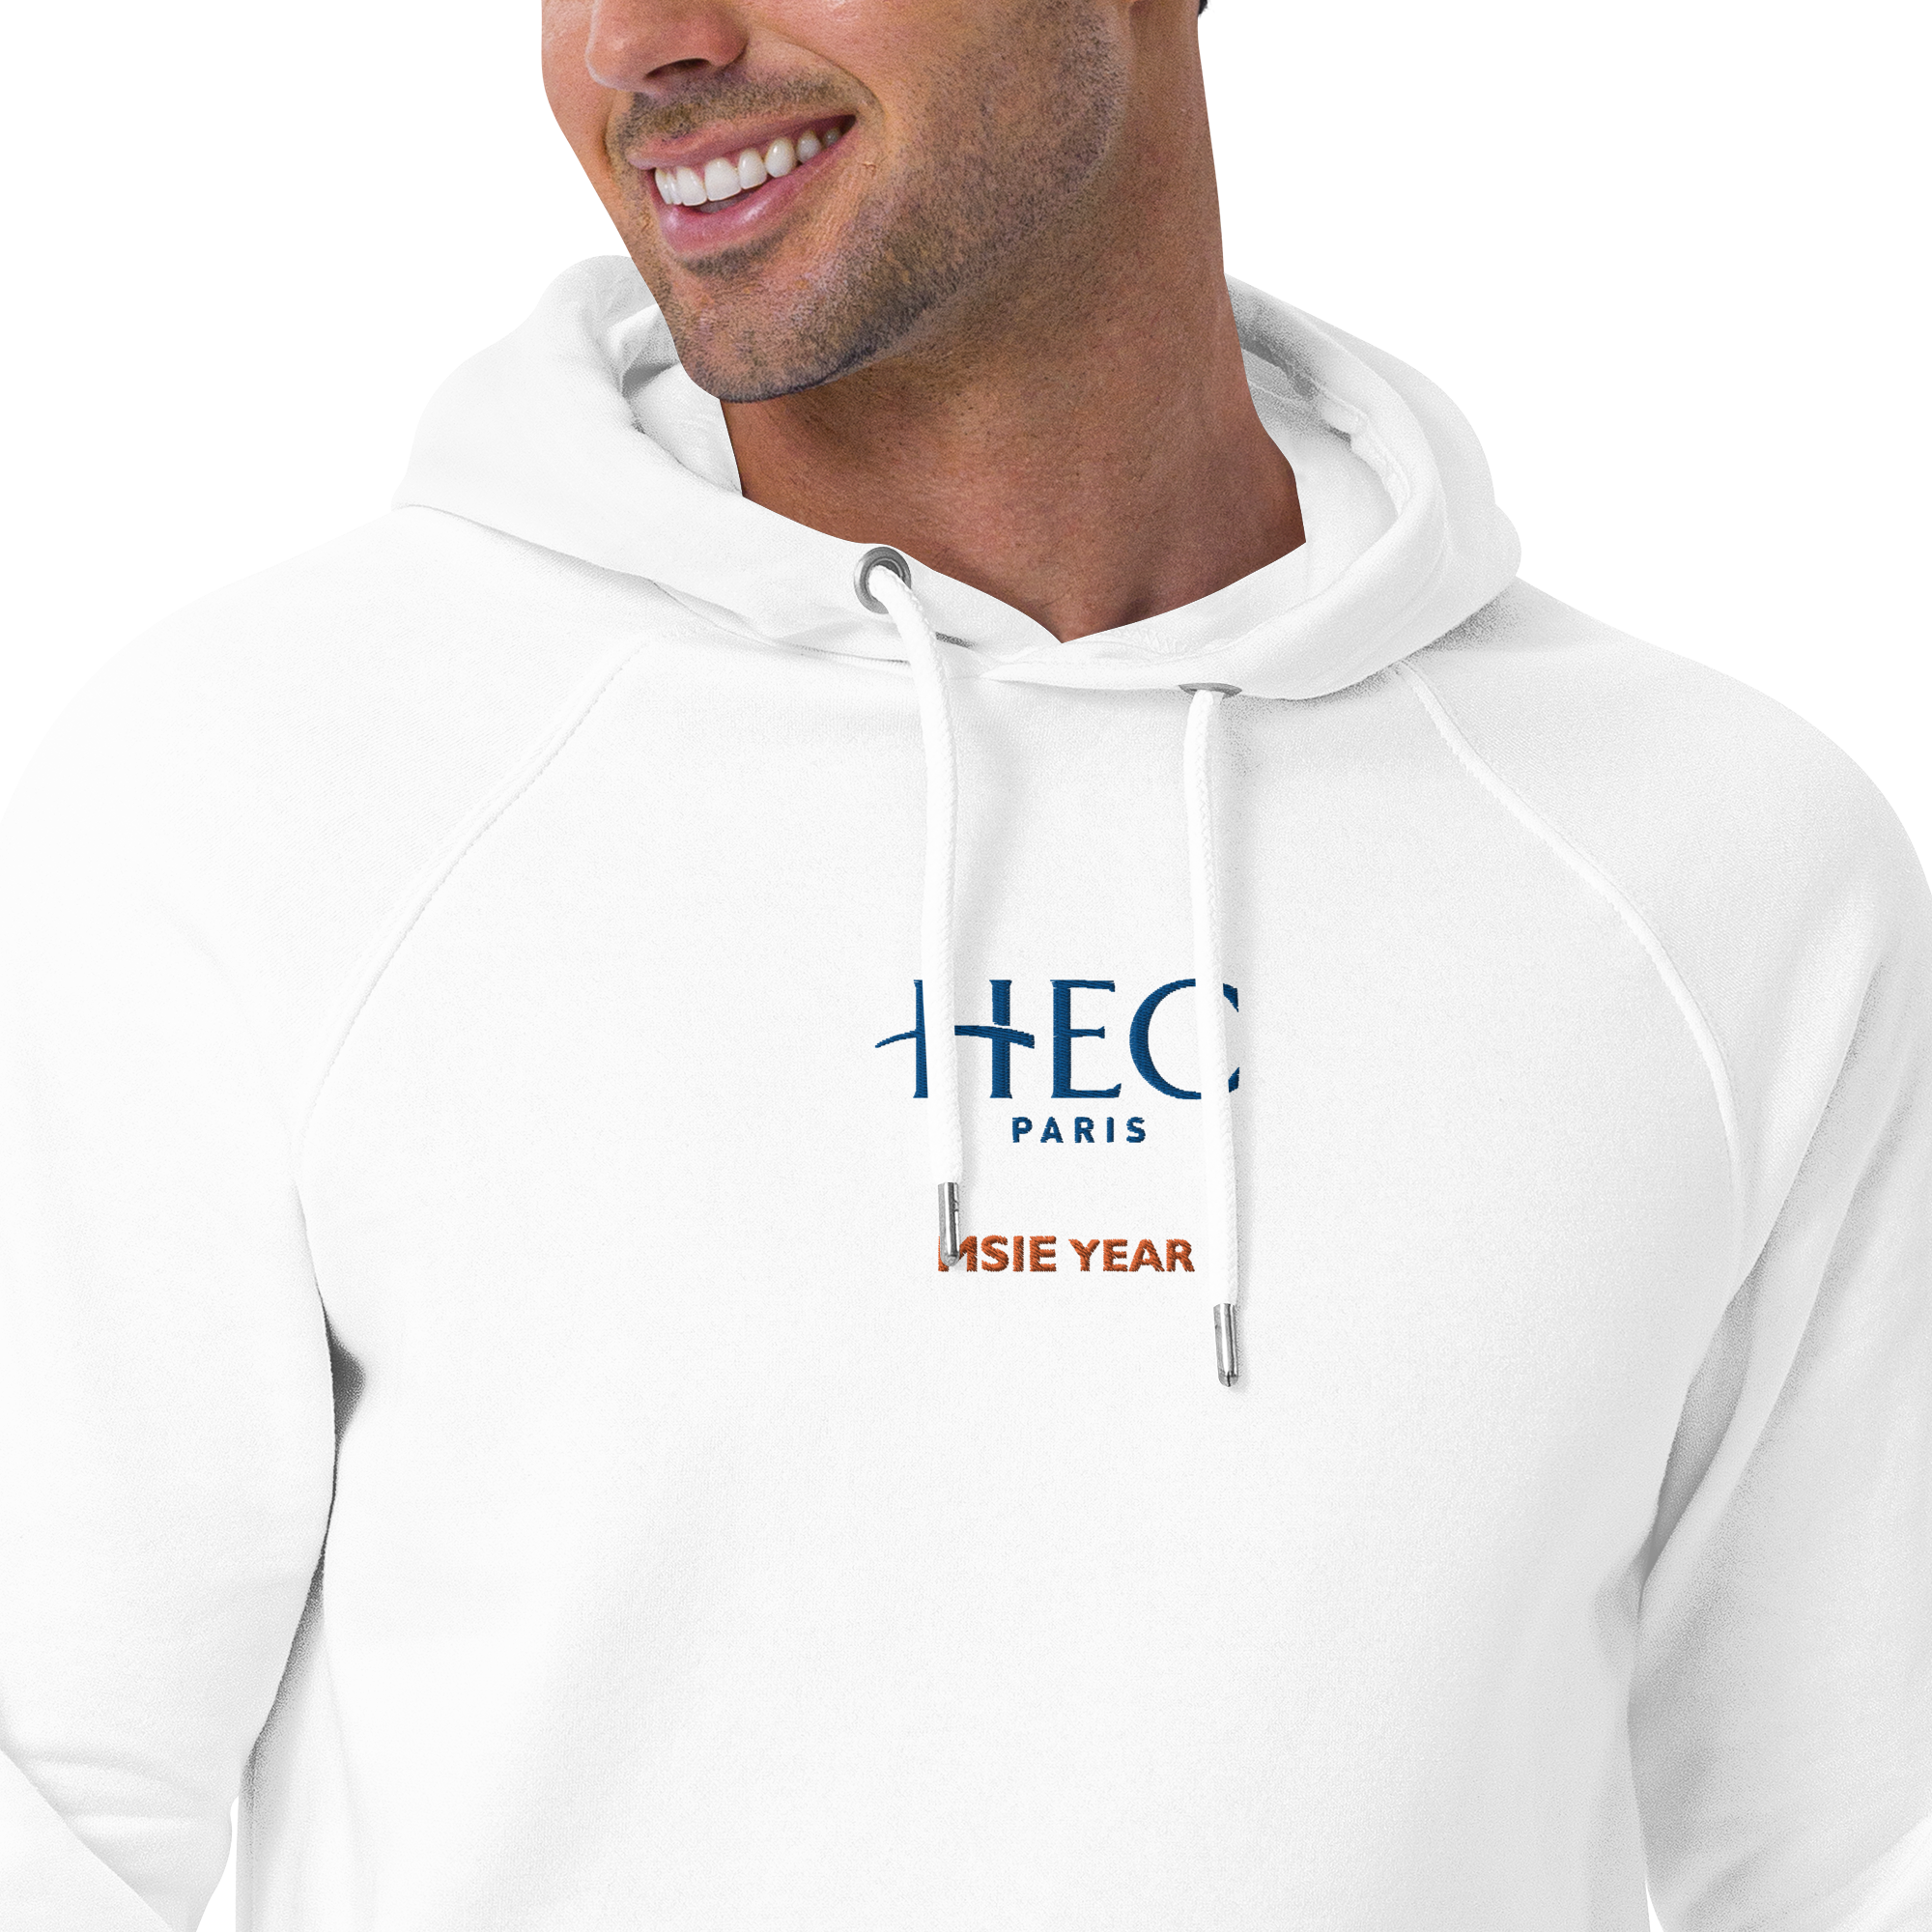 Customizable HEC MSIE Year Unisex Eco Raglan Hoodie